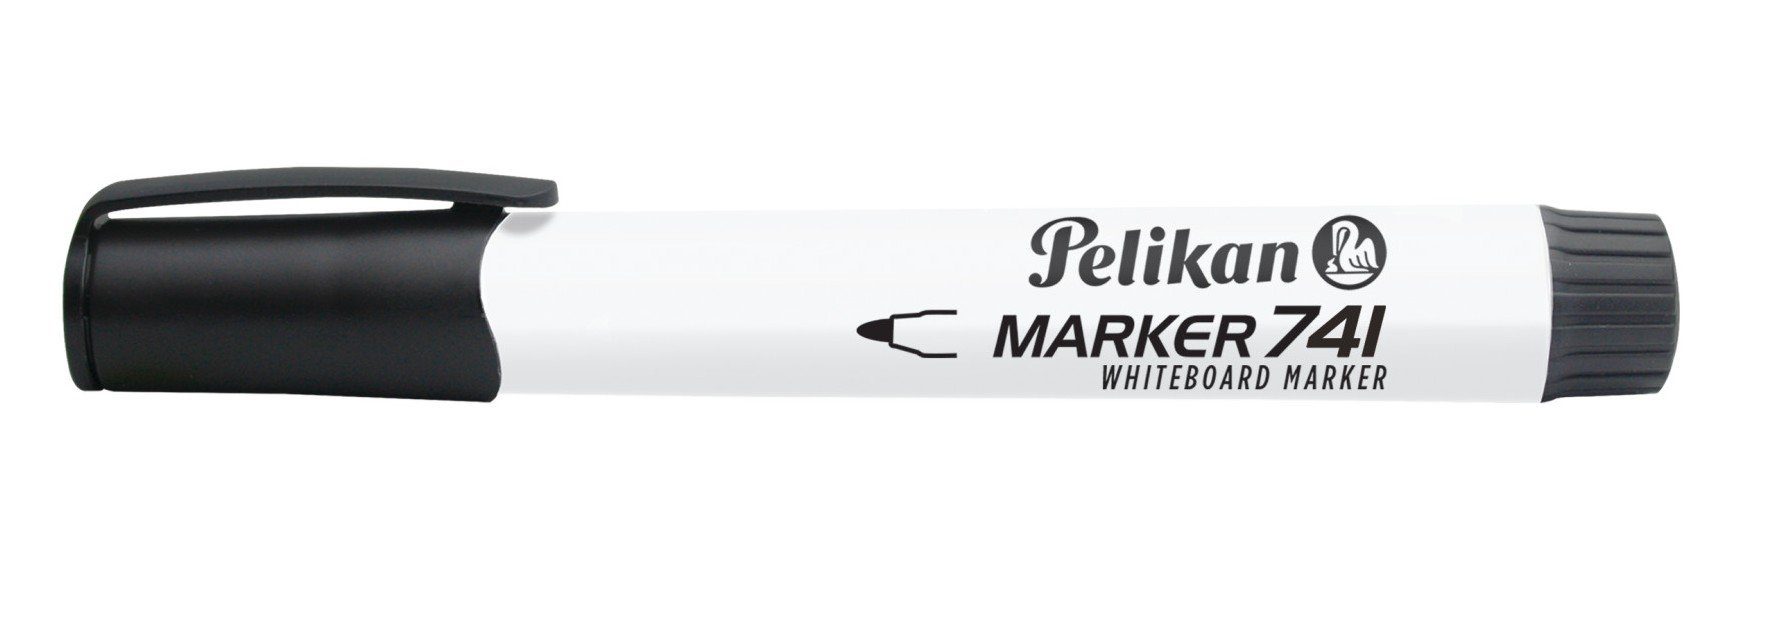 Pelikan schwarz Marker Whiteboard Pelikan Marker 741